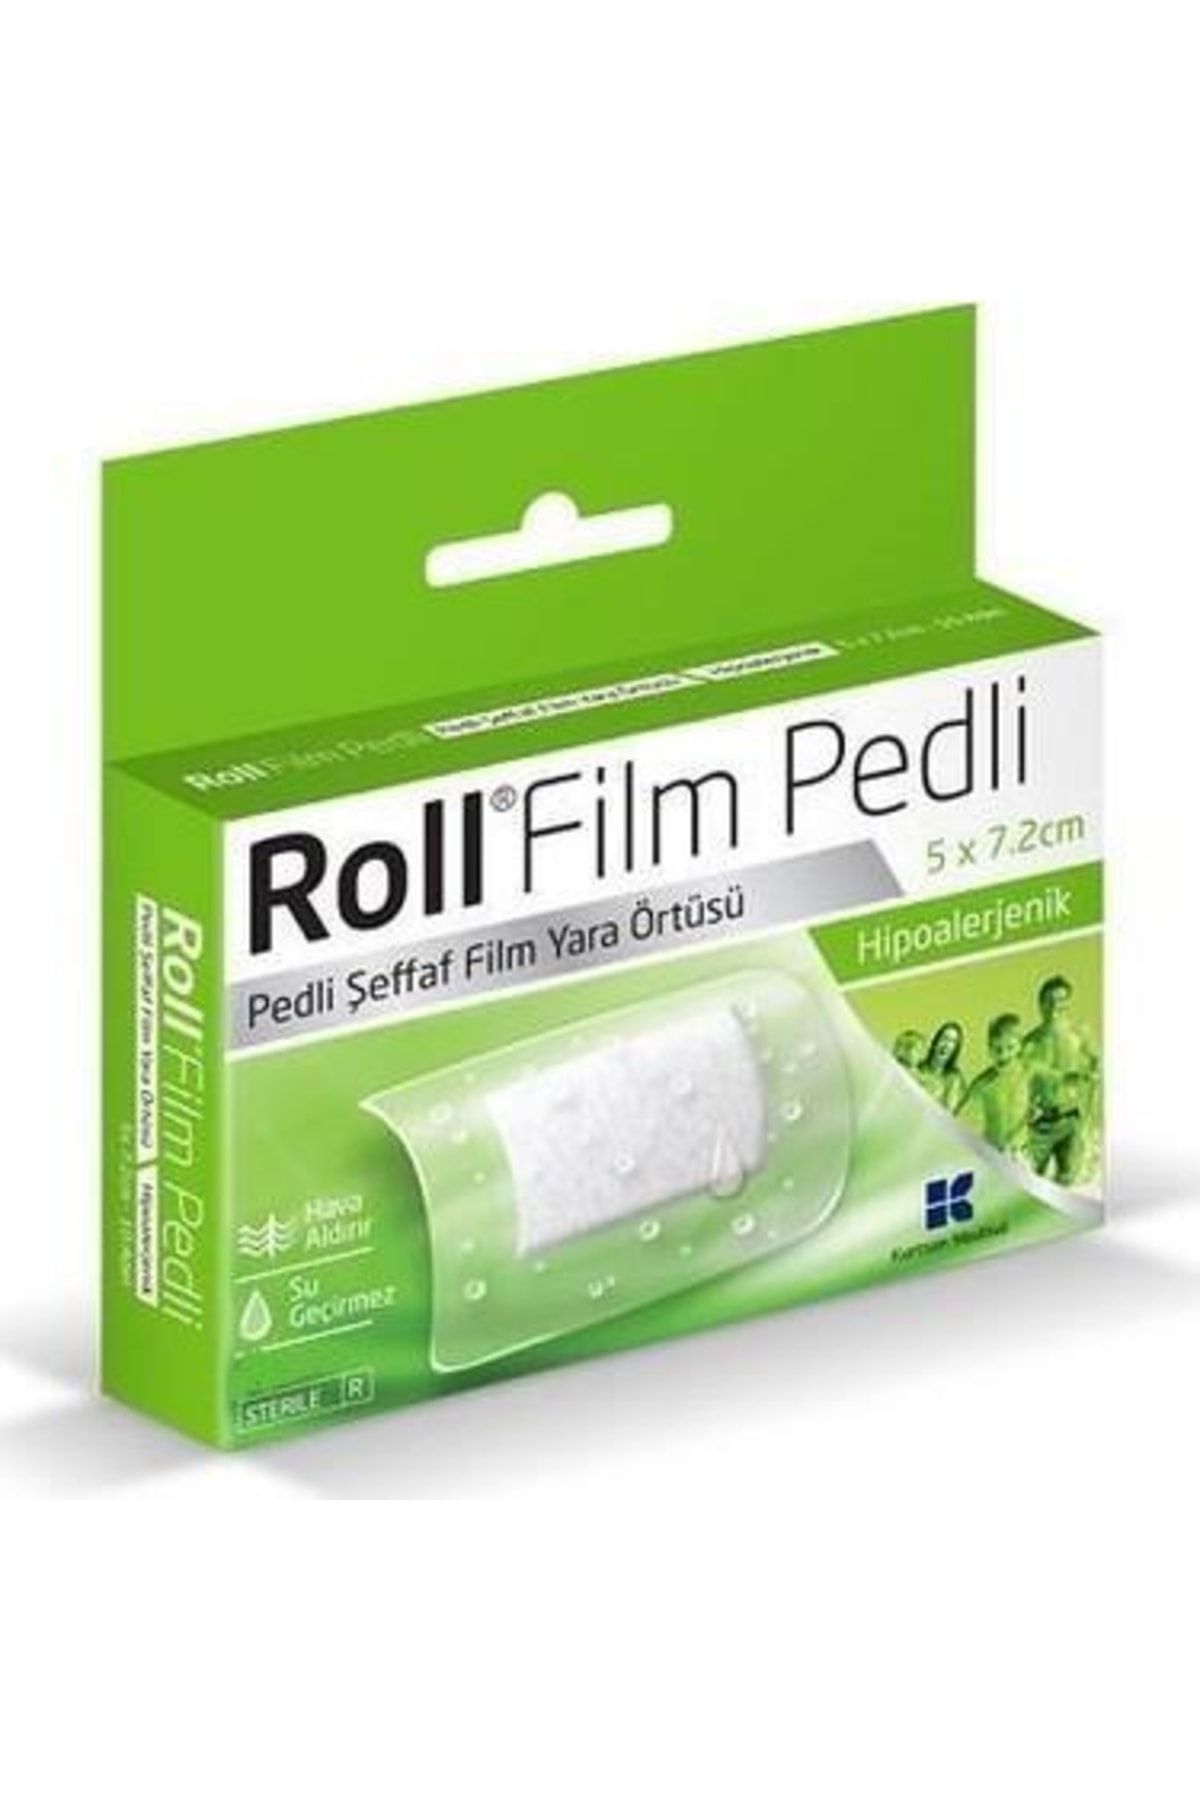 Kurtsan Roll Film Pedli 5x7.2 Cm